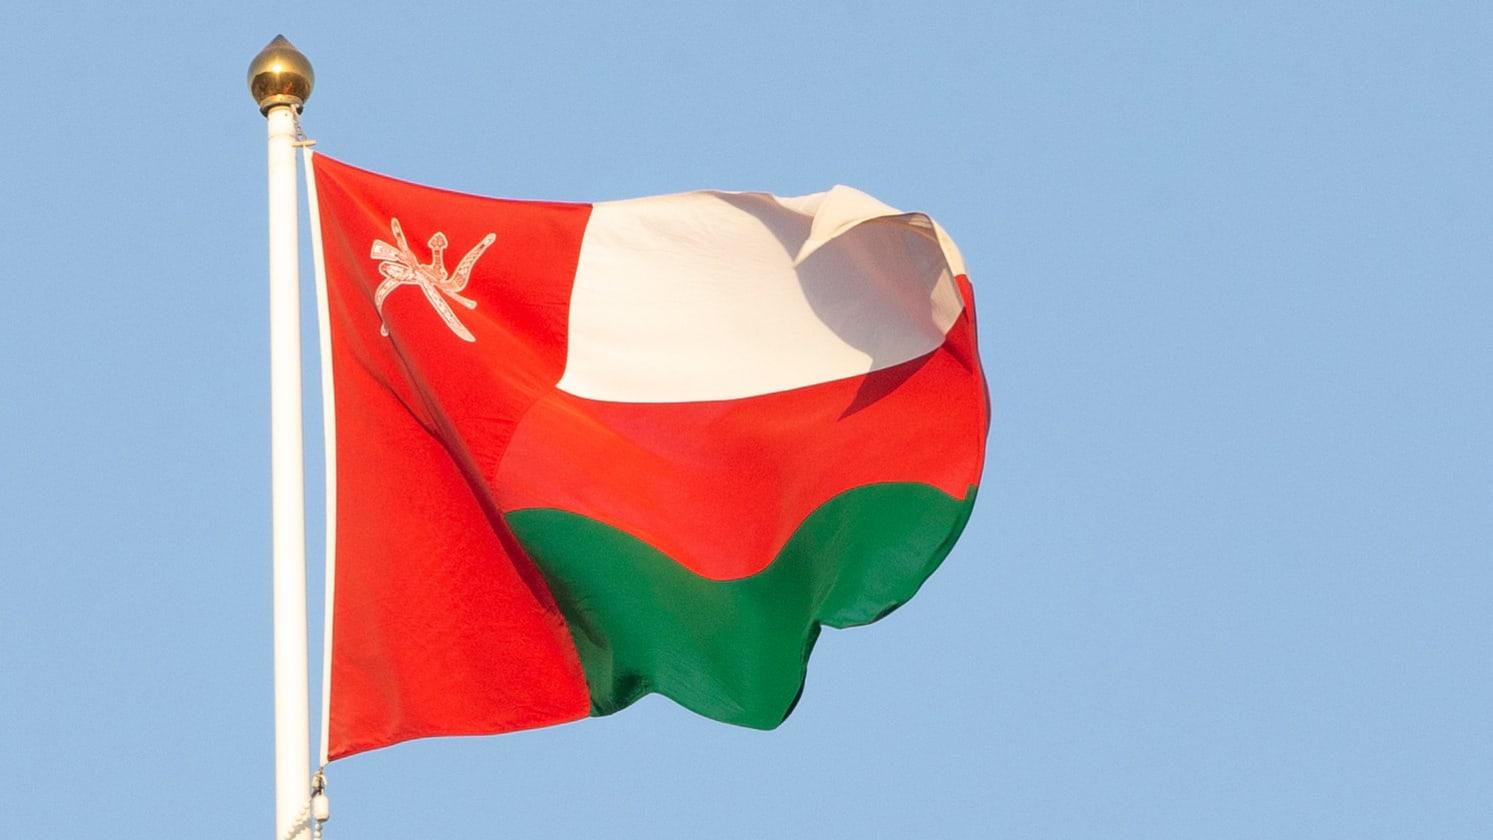 عاجل : لمواطنو سلطنة عمان بإمكانكم الحصول على تأشيرة دخول مباشرة إلى هذه الدولة عبر المنافذ الحدودية